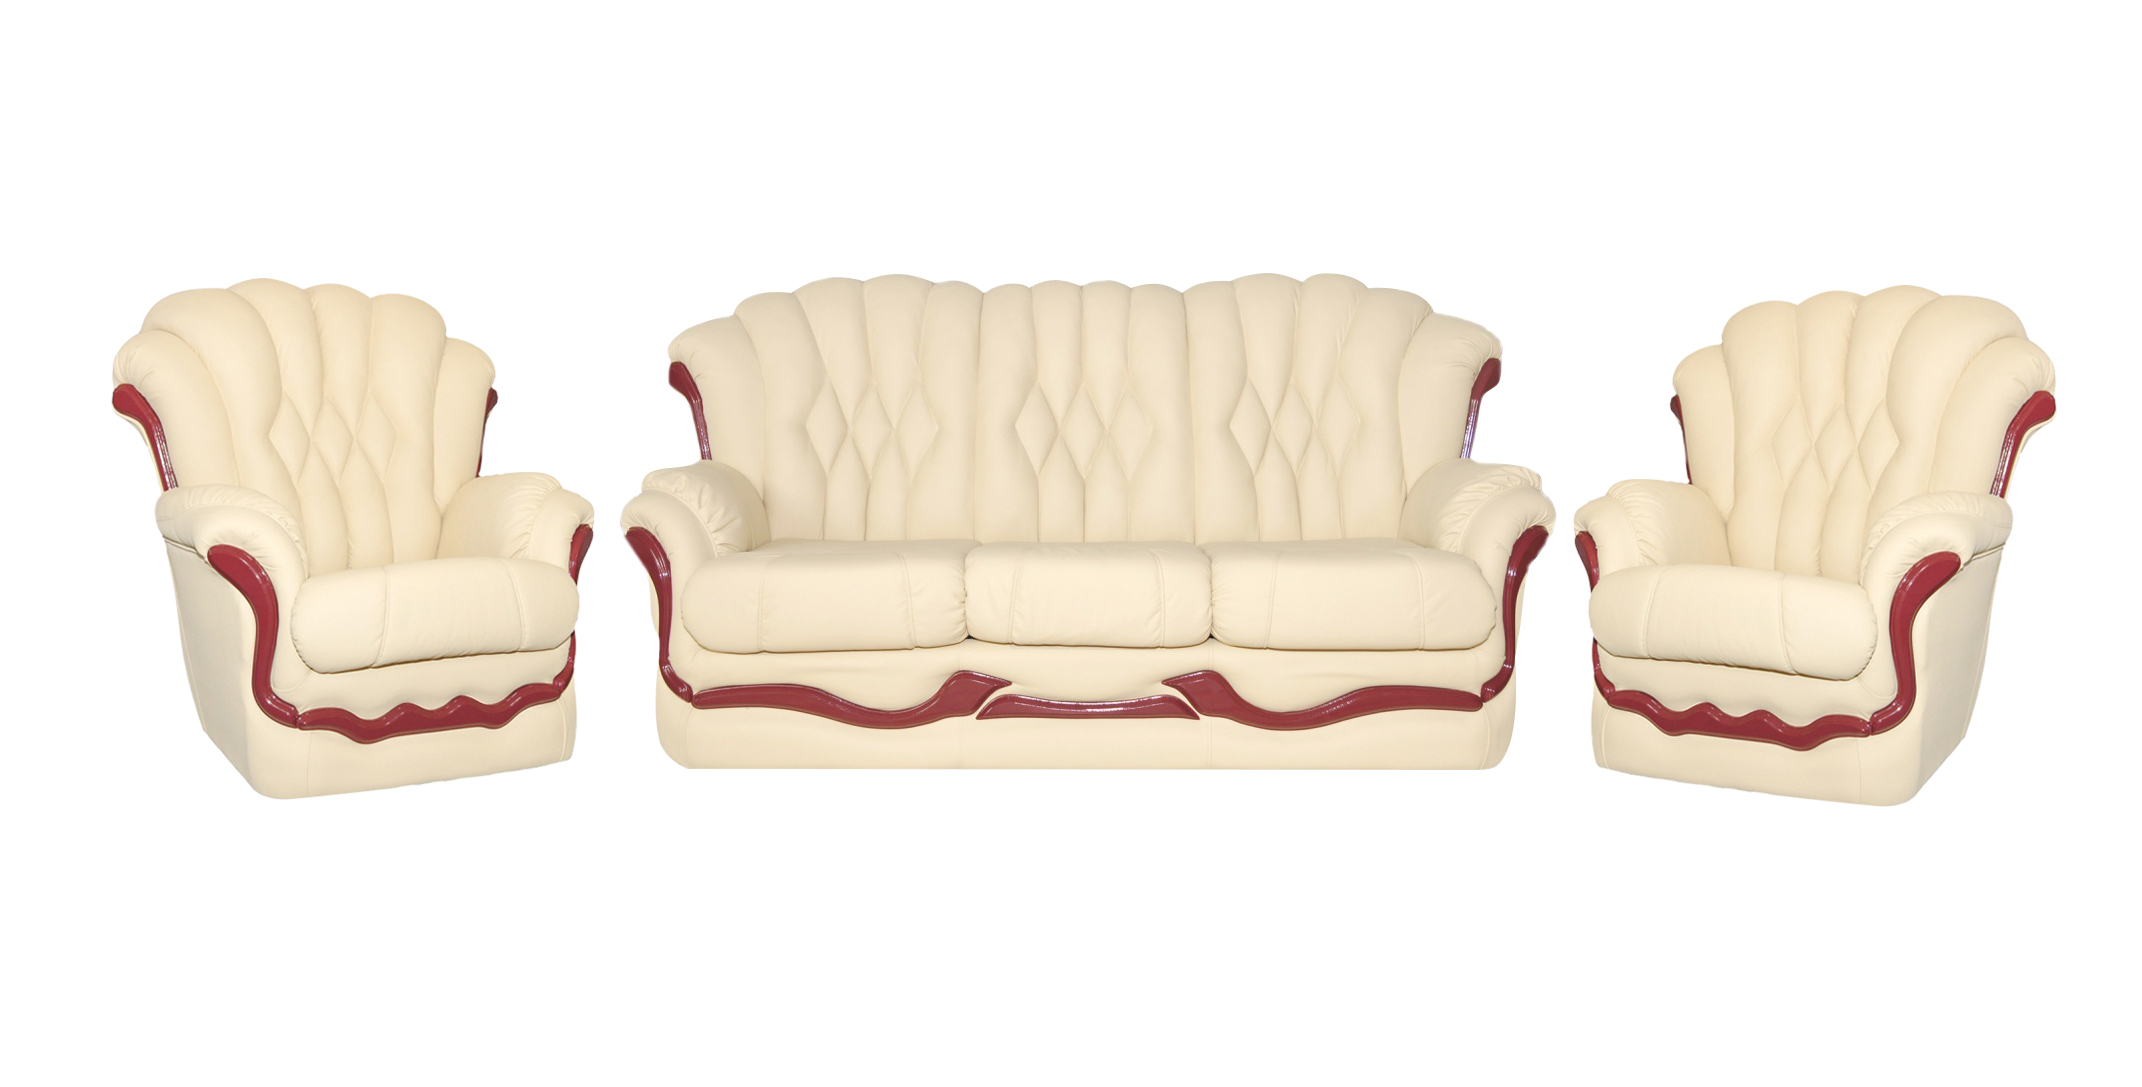 Комплект мебели диван и 2. Комплект мягкой мебели (диван и кресло) модель «Форест». Комплект (софа + 2 кресла) Cezar. Мягкая мебель Пронто-3 диван 2 кресла. Комплект мягкой мебели lb 2037l "Dirty ОАК".